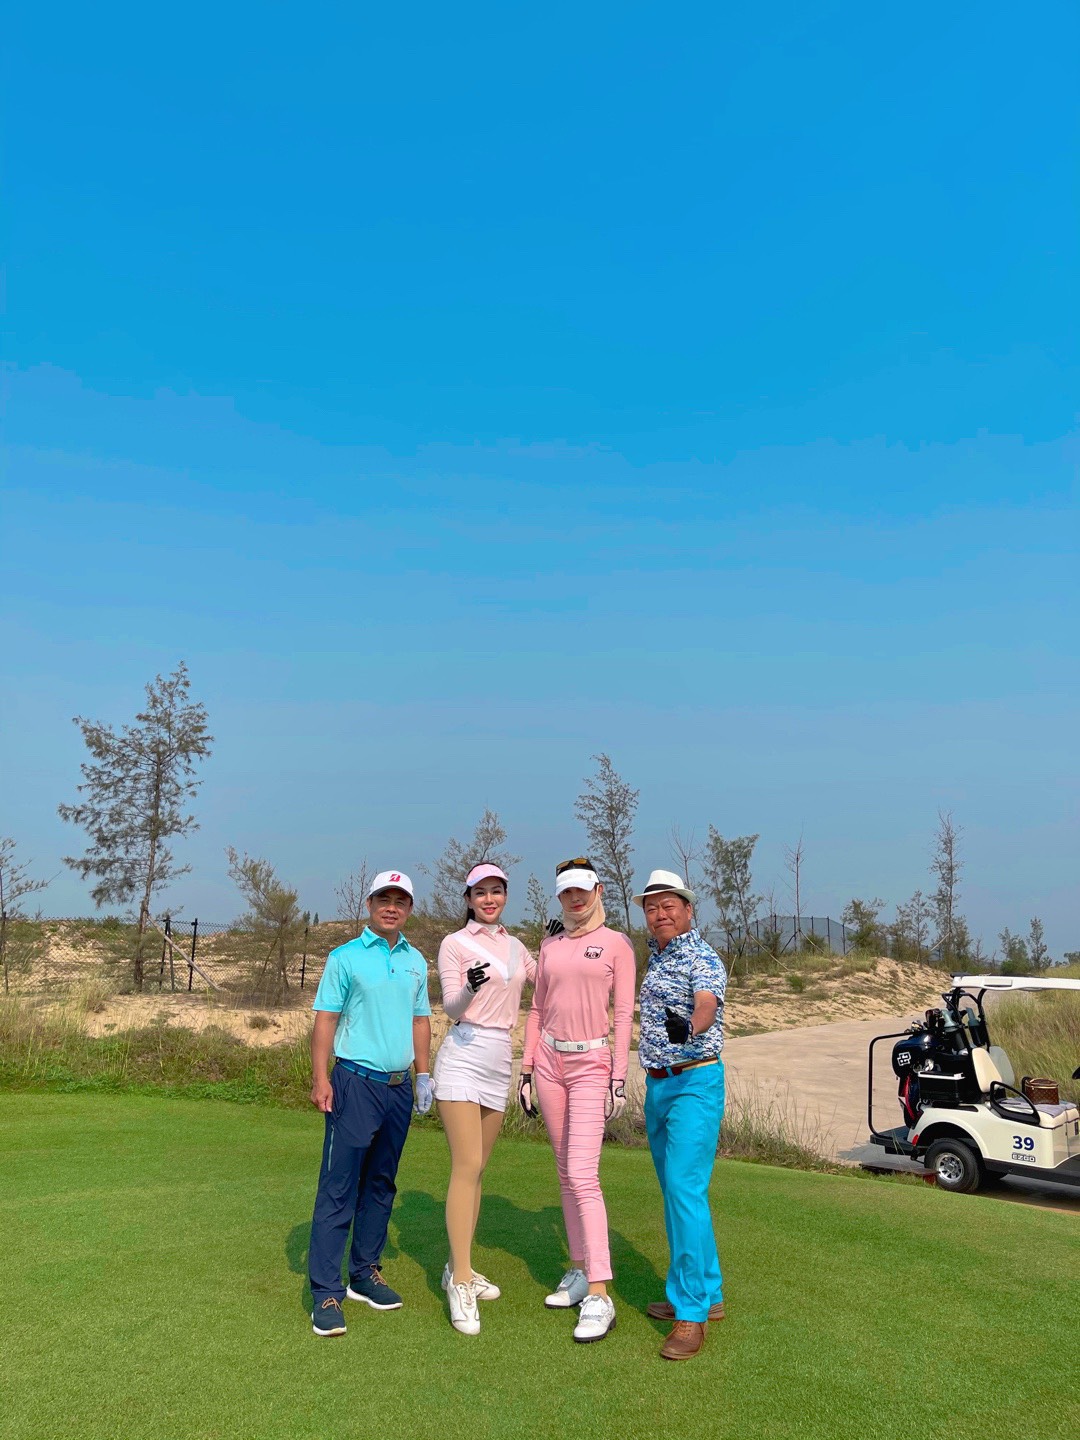 Á Hoàng Golf Queen, MC Nguyễn Hải Anh đã có một ngày thi đấu thật tốt